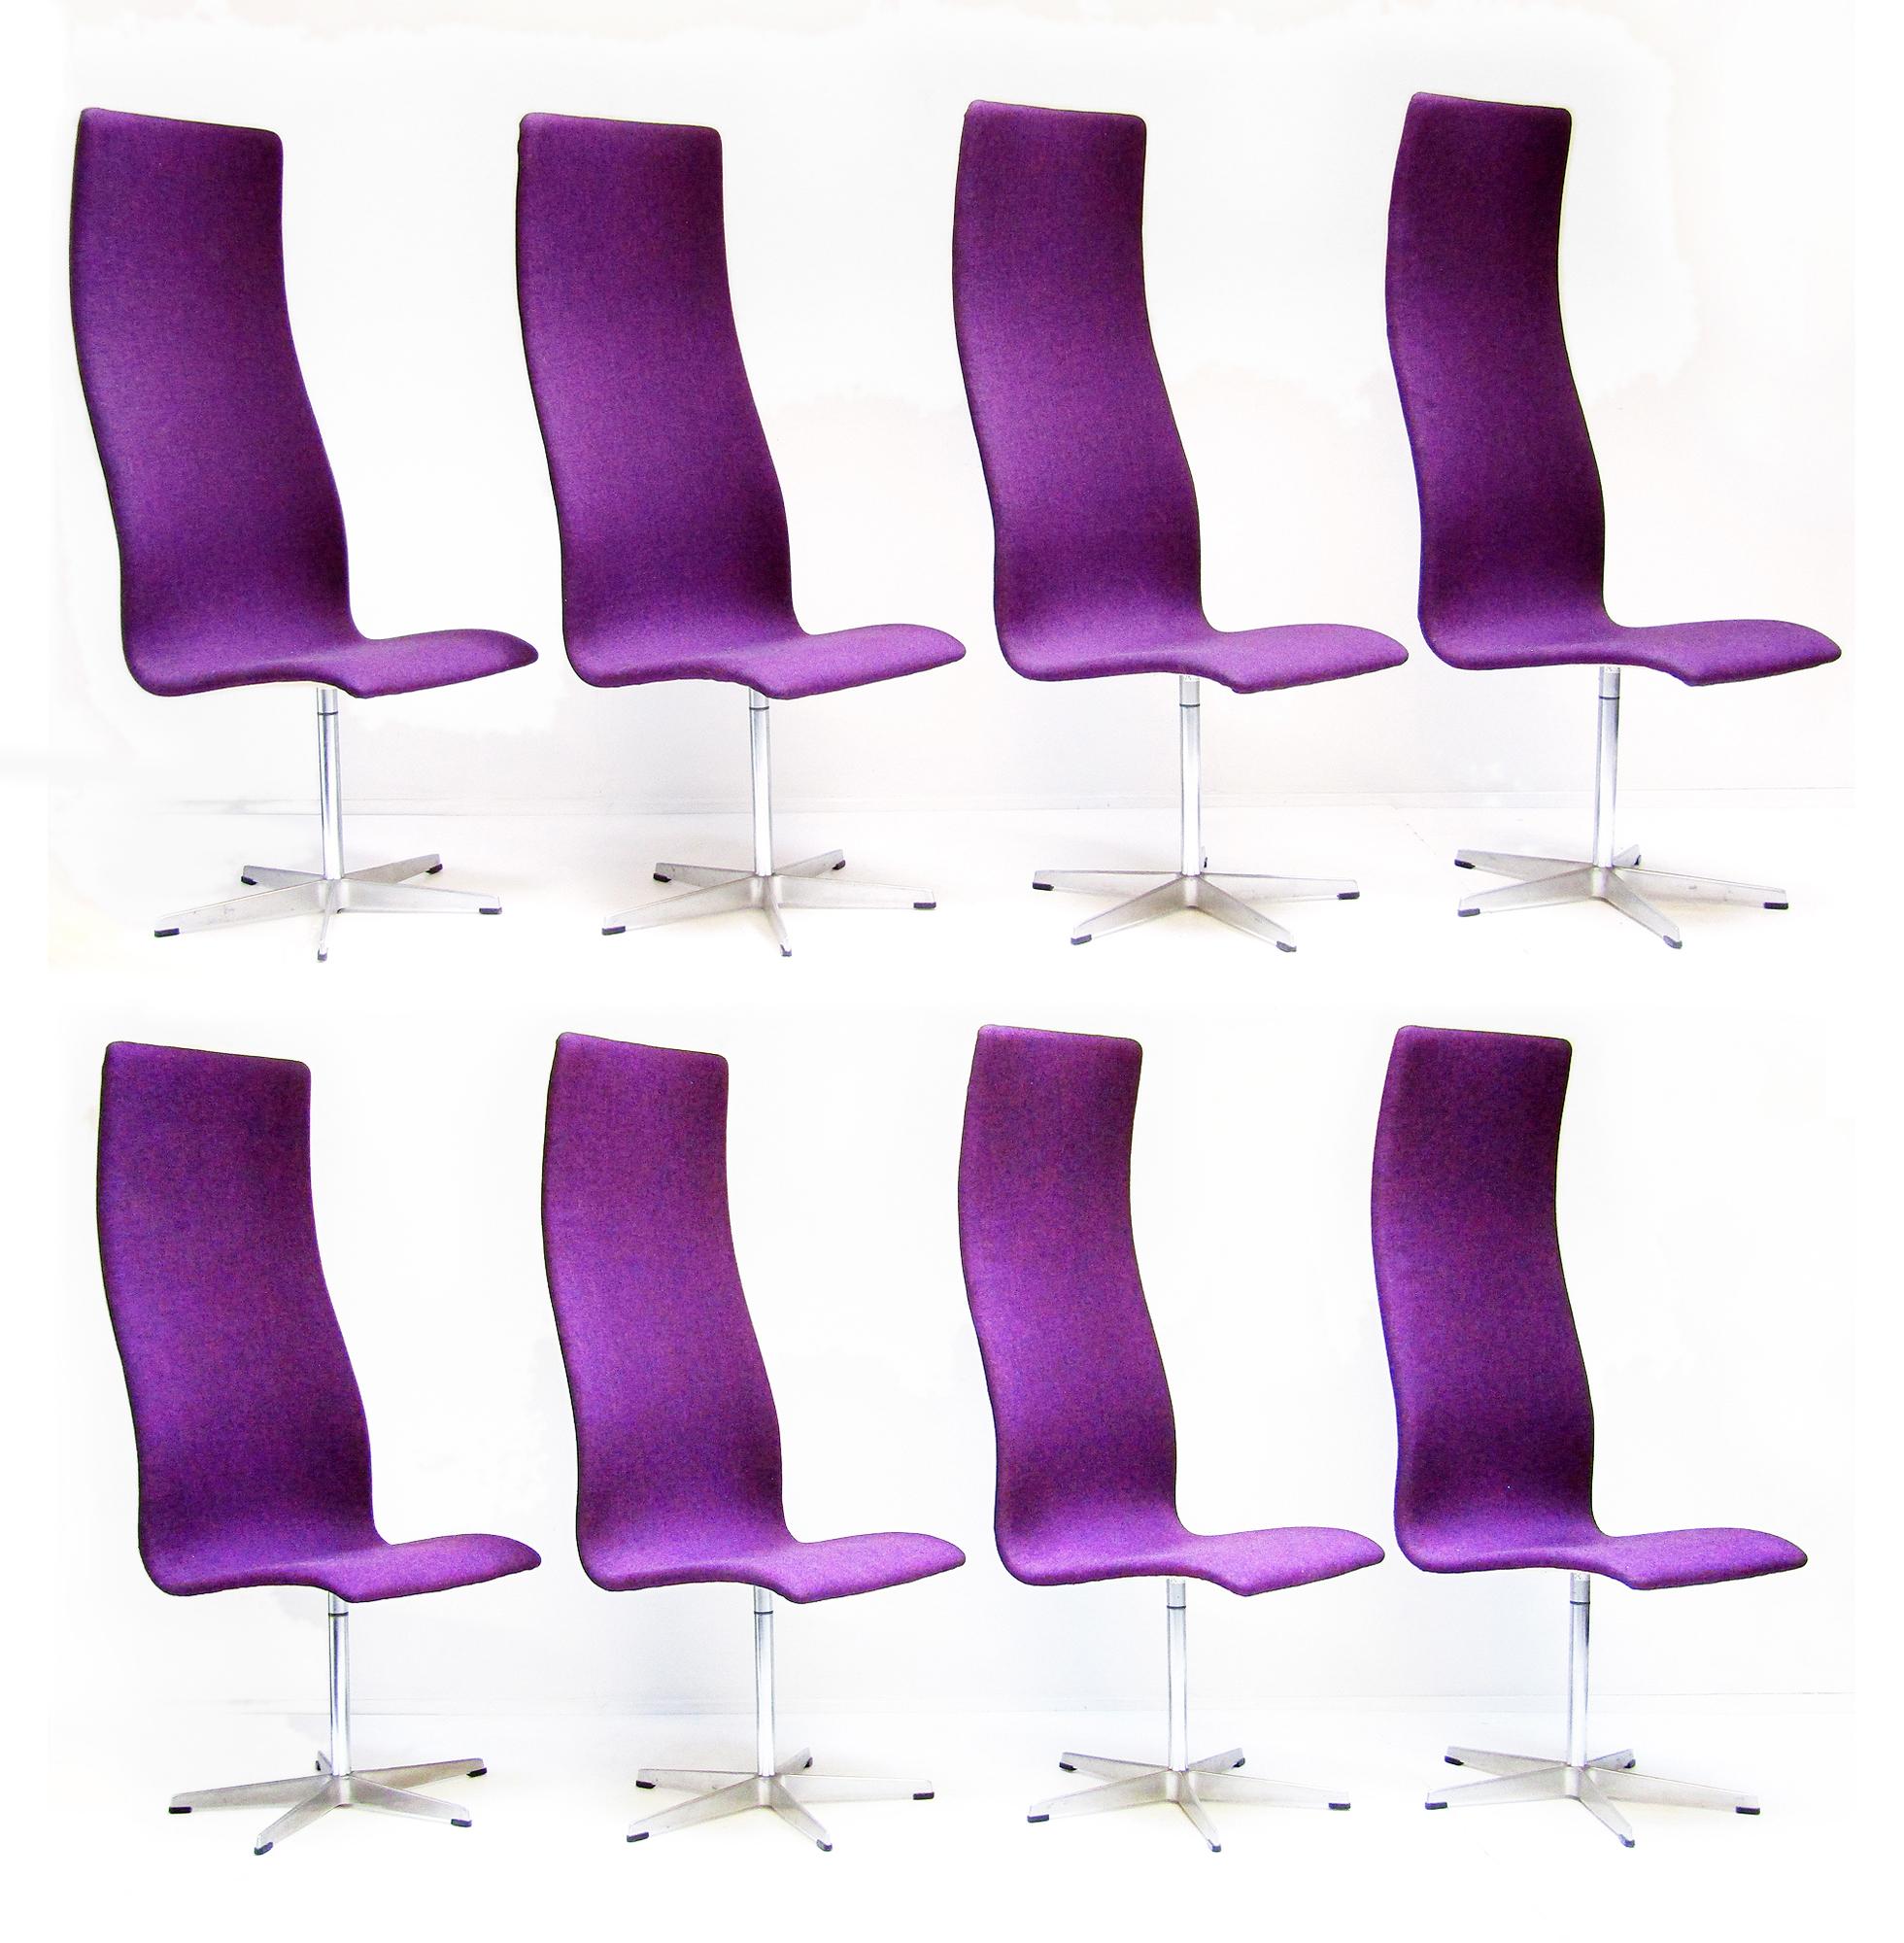 Un ensemble de huit chaises Oxford vintage des années 1960 à dossier haut, créées par Arne Jacobsen pour Fritz Hansen.

Ce modèle moderniste classique a été créé au début des années 1960 pour le St Catherine's College de l'université d'Oxford,